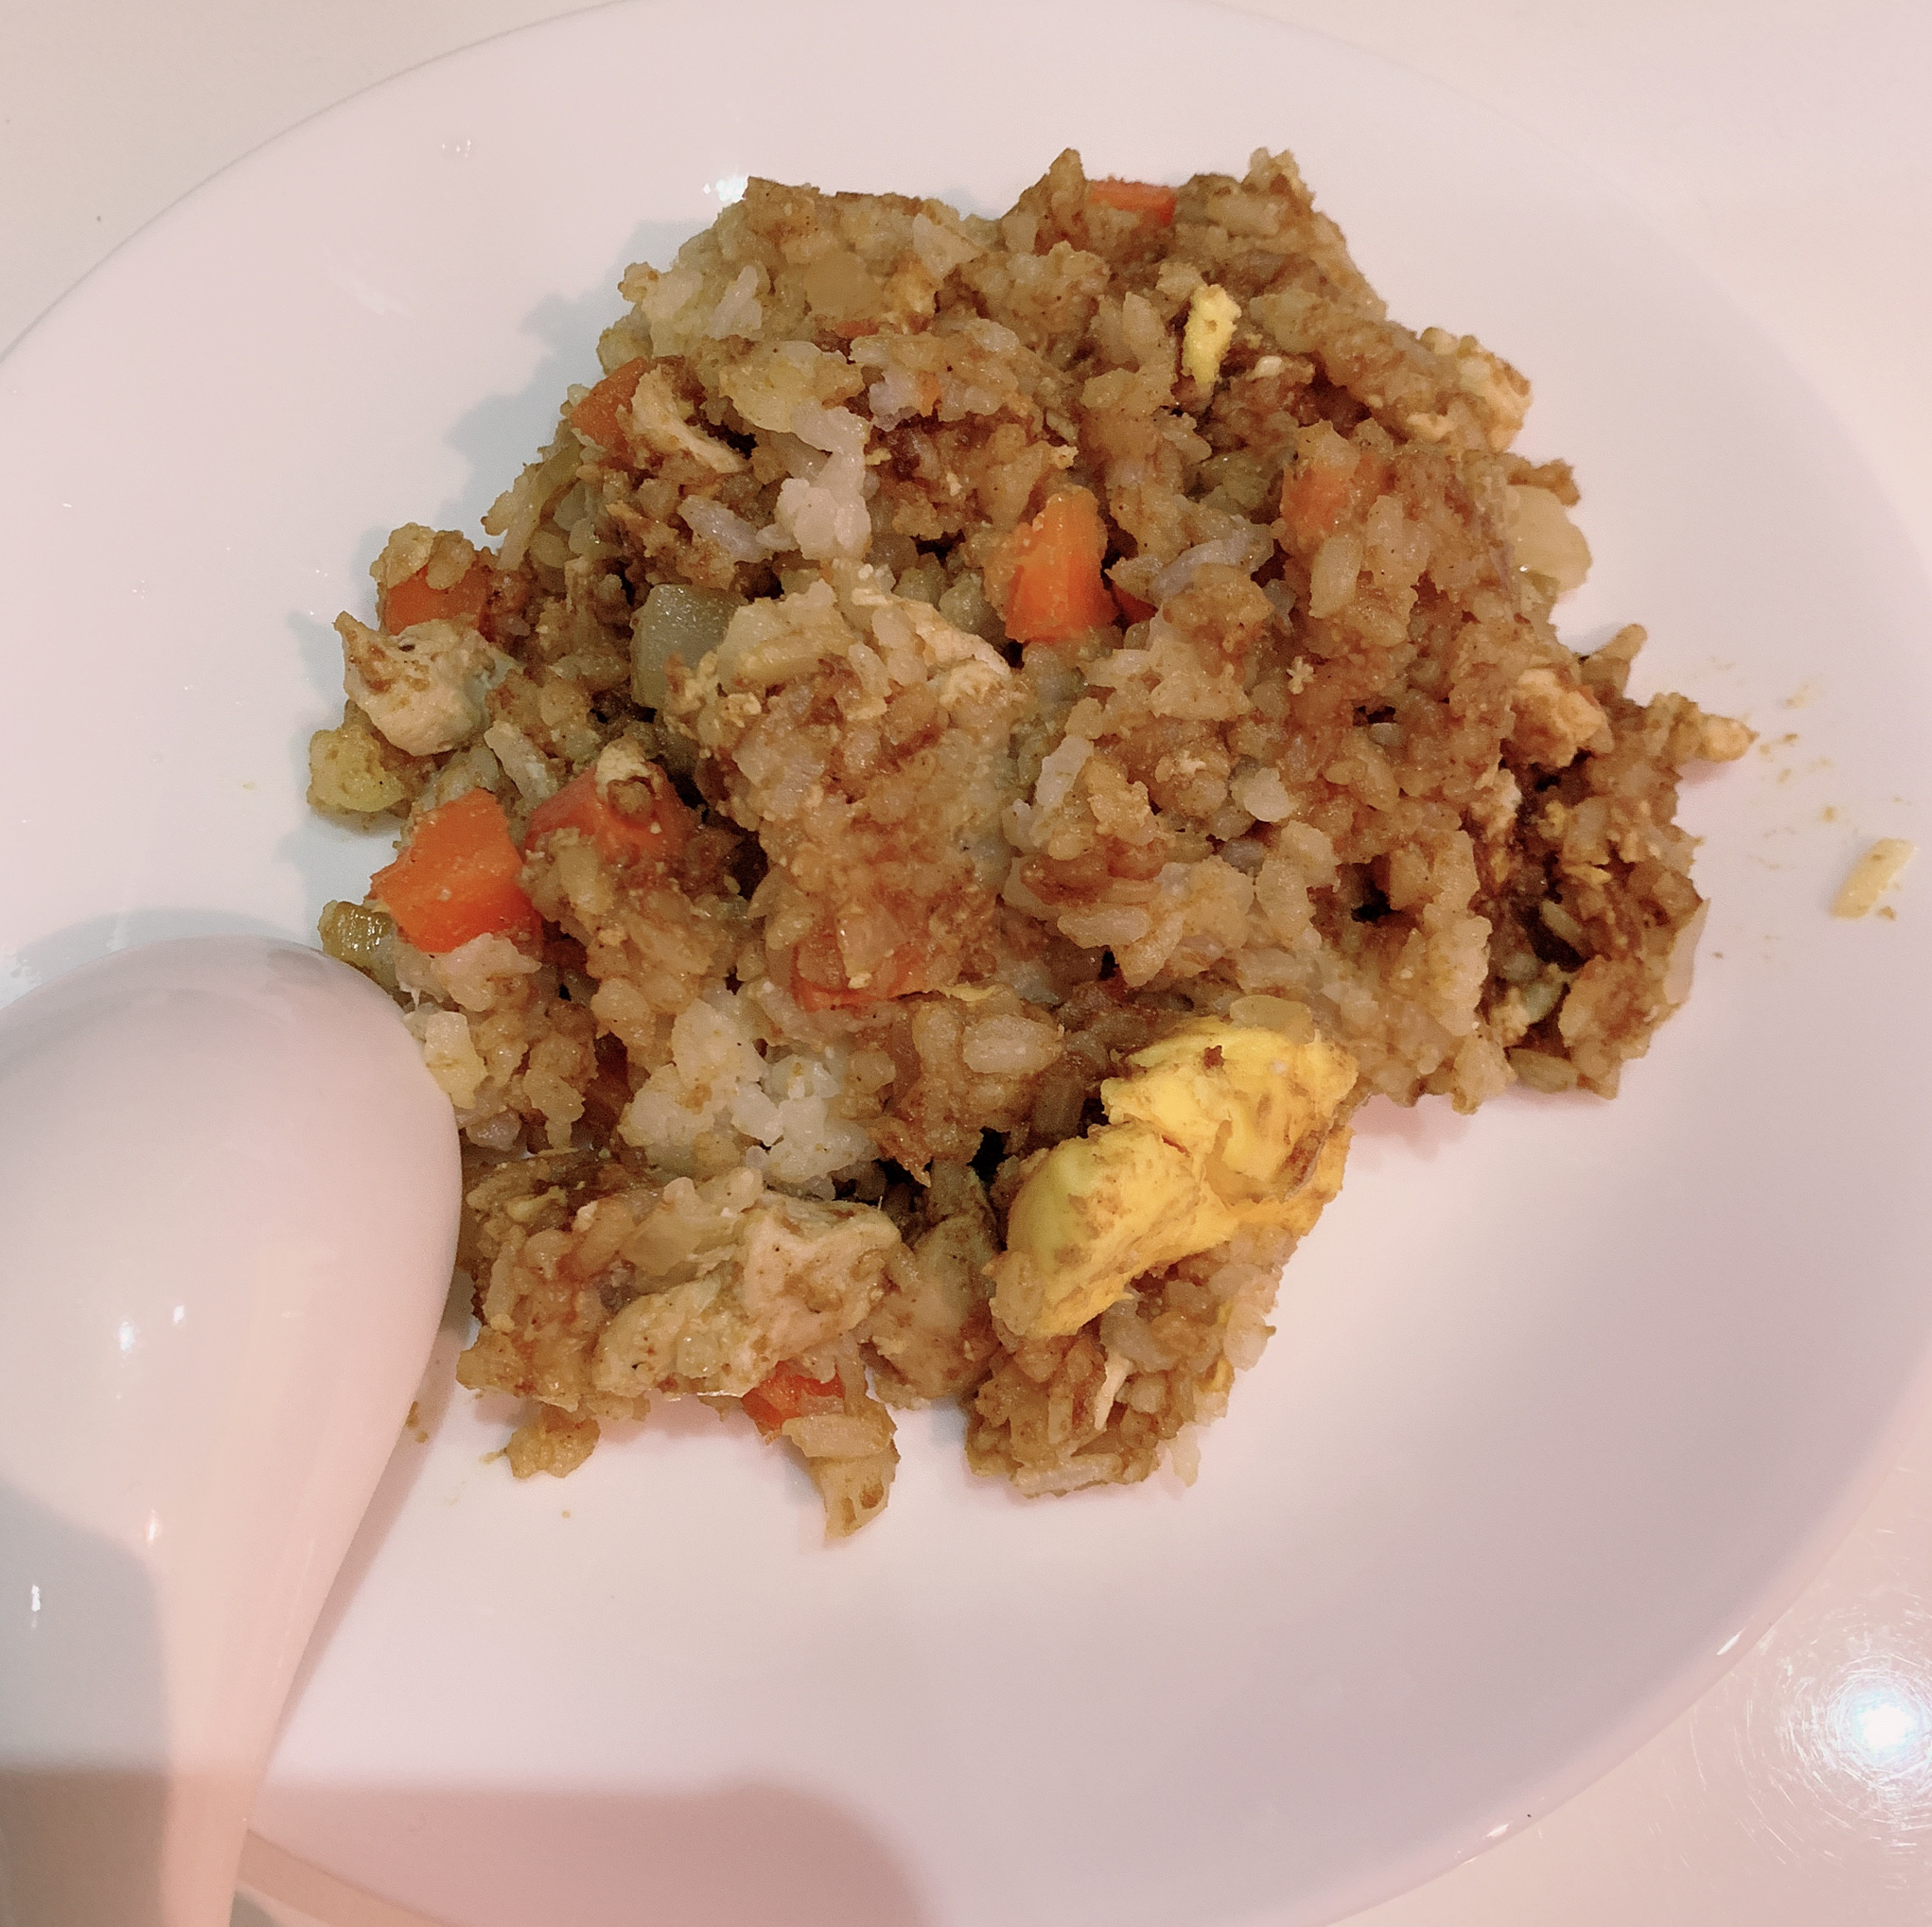 鮮奶雞胸肉腿肉咖哩蘿蔔碎洋蔥燉飯-電鍋版